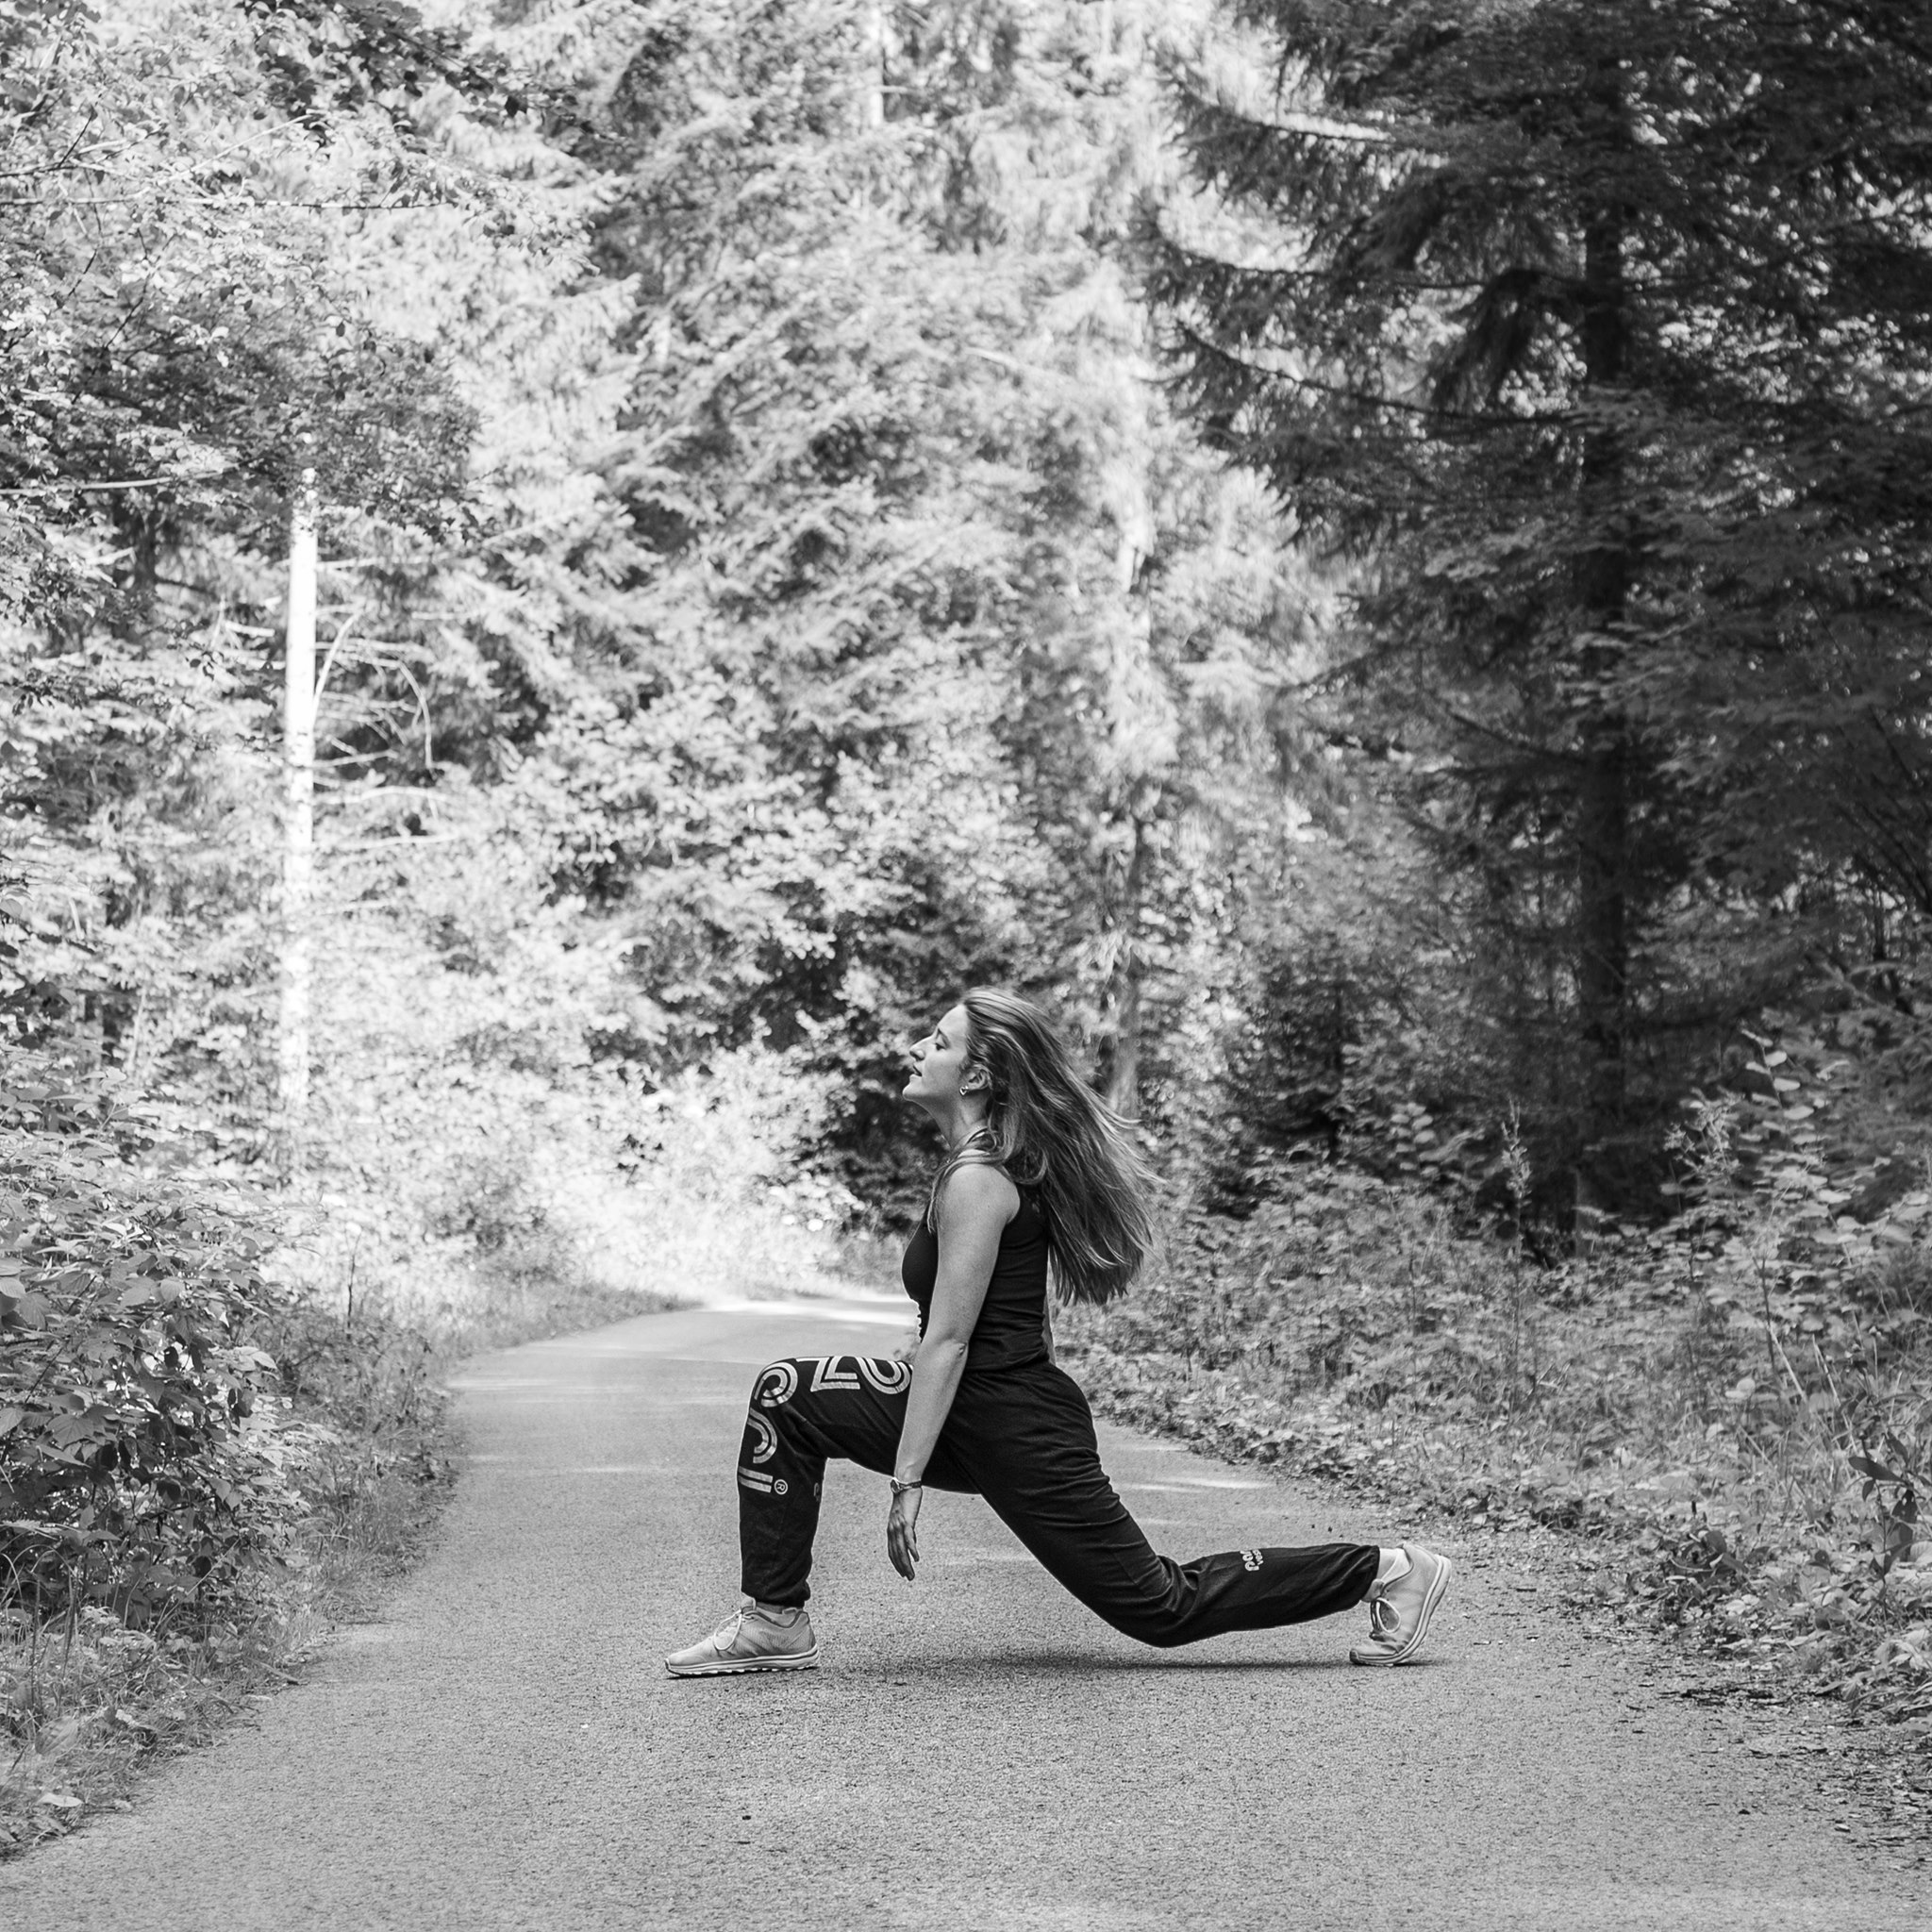 Photographie en niveau de gris de Cécile Reiter qui danse au milieu d'une route dans une forêt du Jura